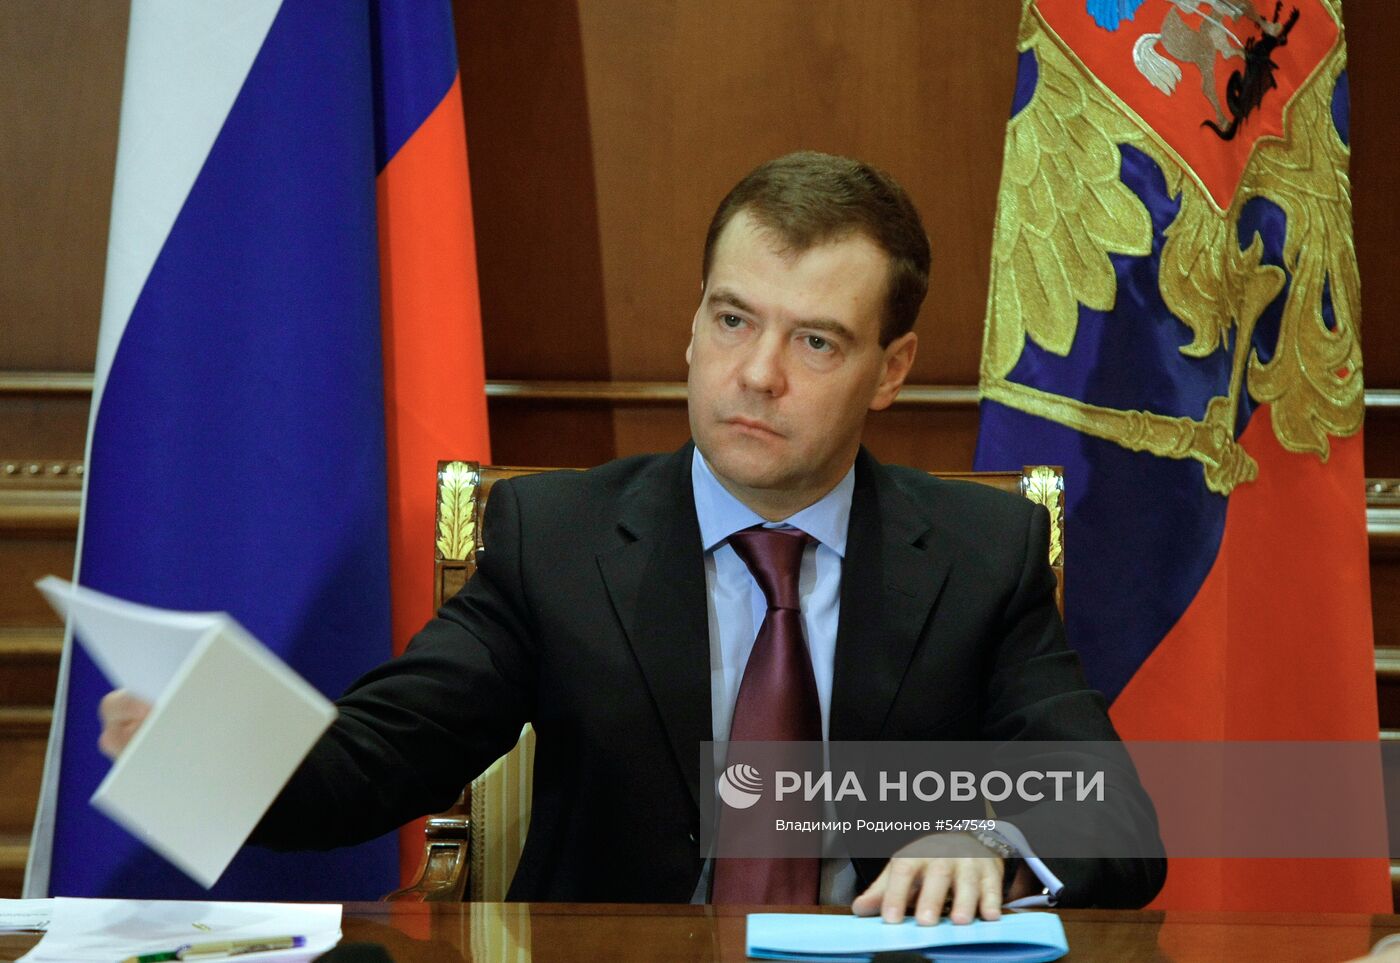 Дмитрий Медведев провел совещание по экономическим вопросам